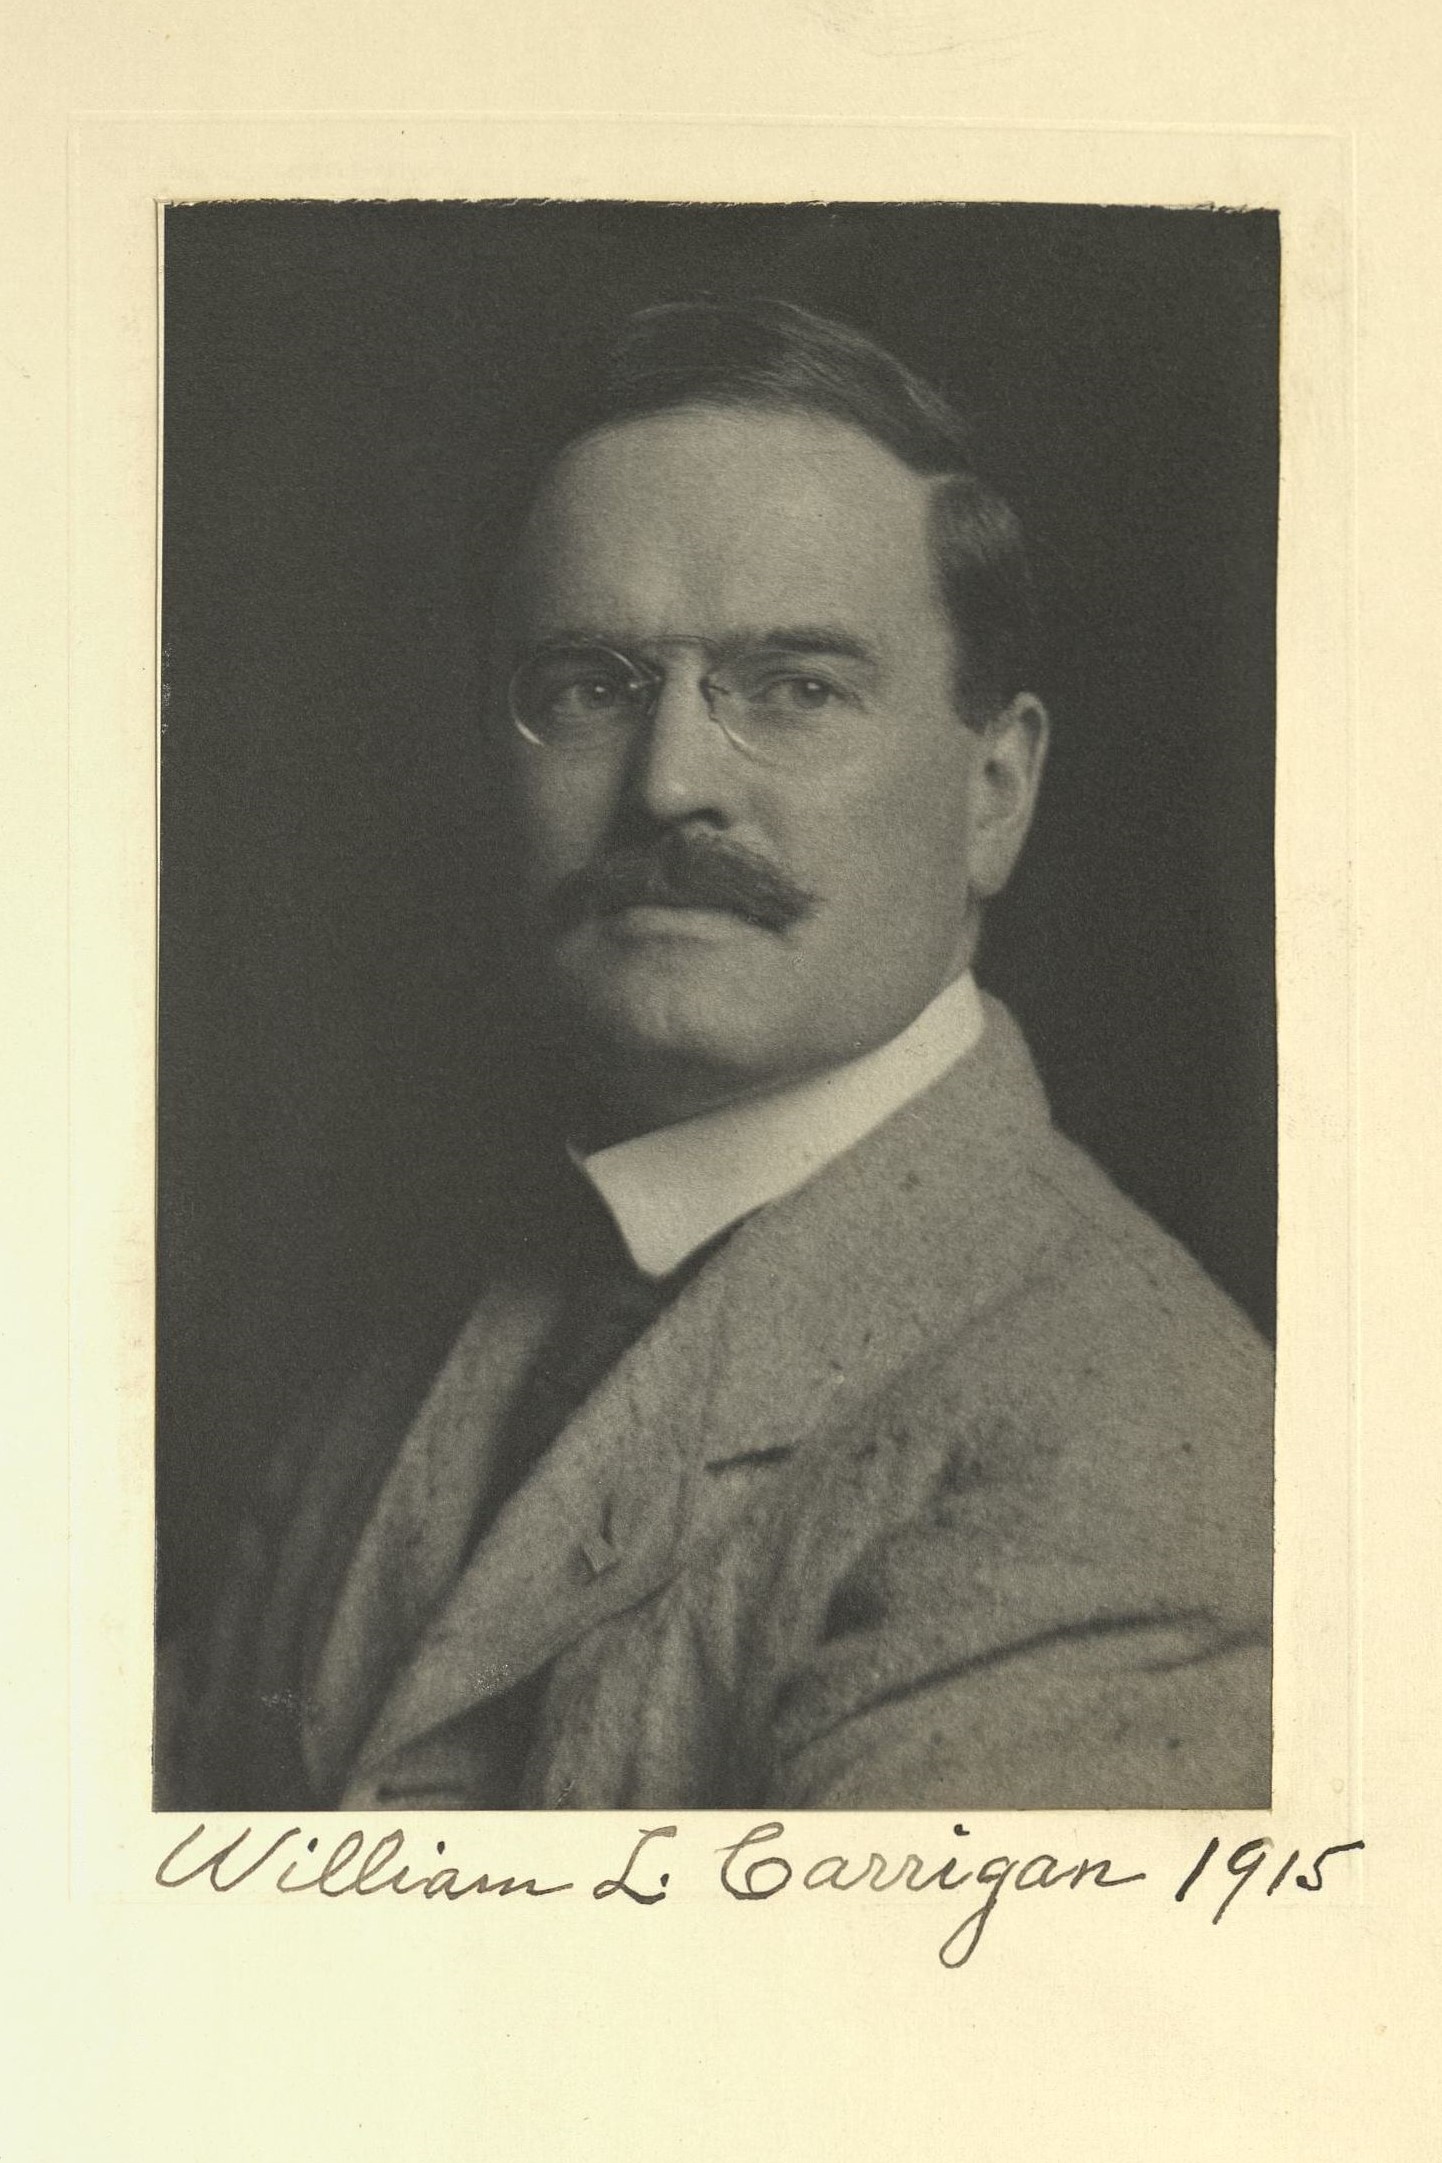 Member portrait of William L. Carrigan